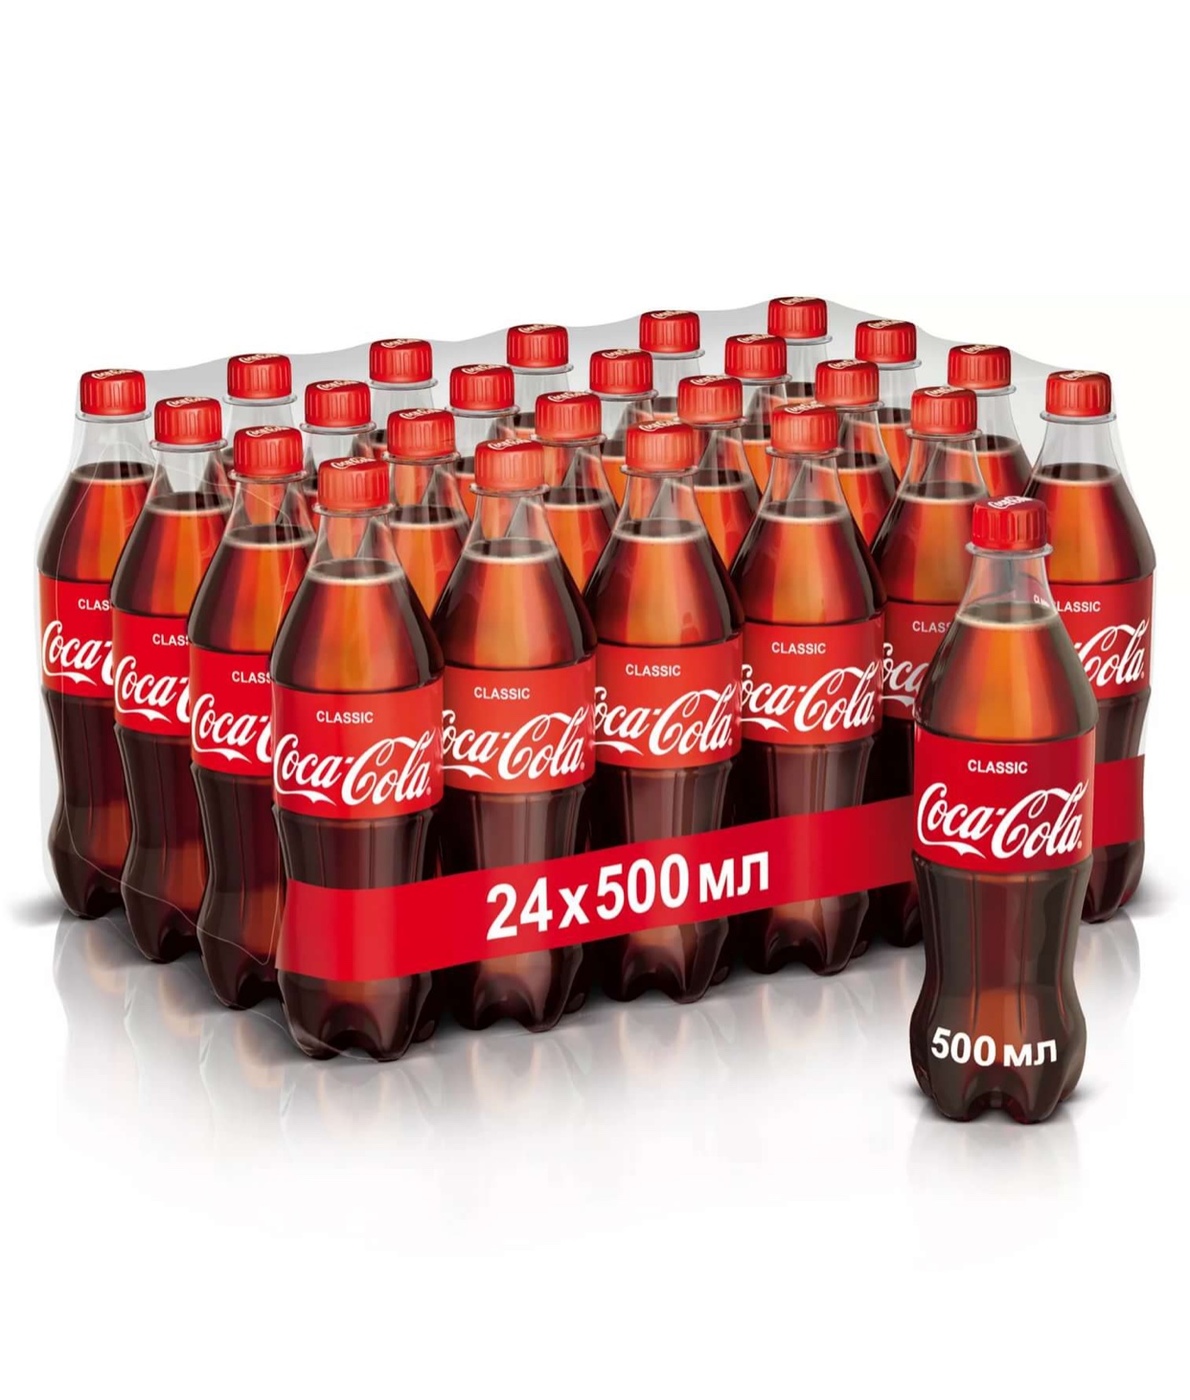 "кока-кола" (coca-cola). история, состав и вред кока-колы | 7daysinfo - полезная информация на каждый день